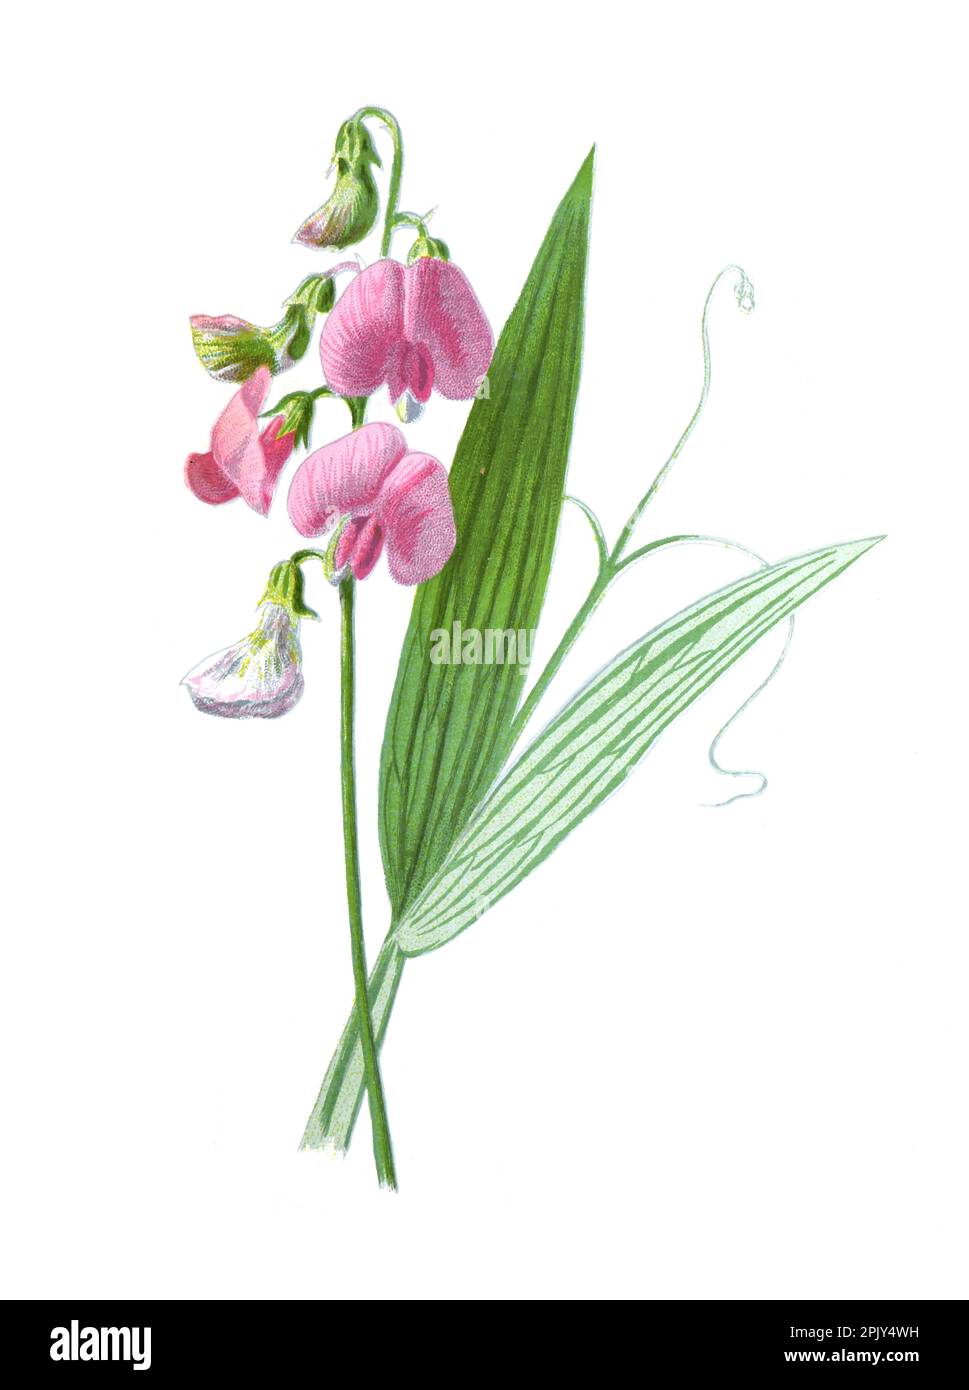 Ewige Erbse oder Lathyrus latifolius, die ewige Erbse, mehrjährige Erbse, breitblättrige ewige Erbse. Vintage handgezeichnete Wilderbsenblüten. Stockfoto